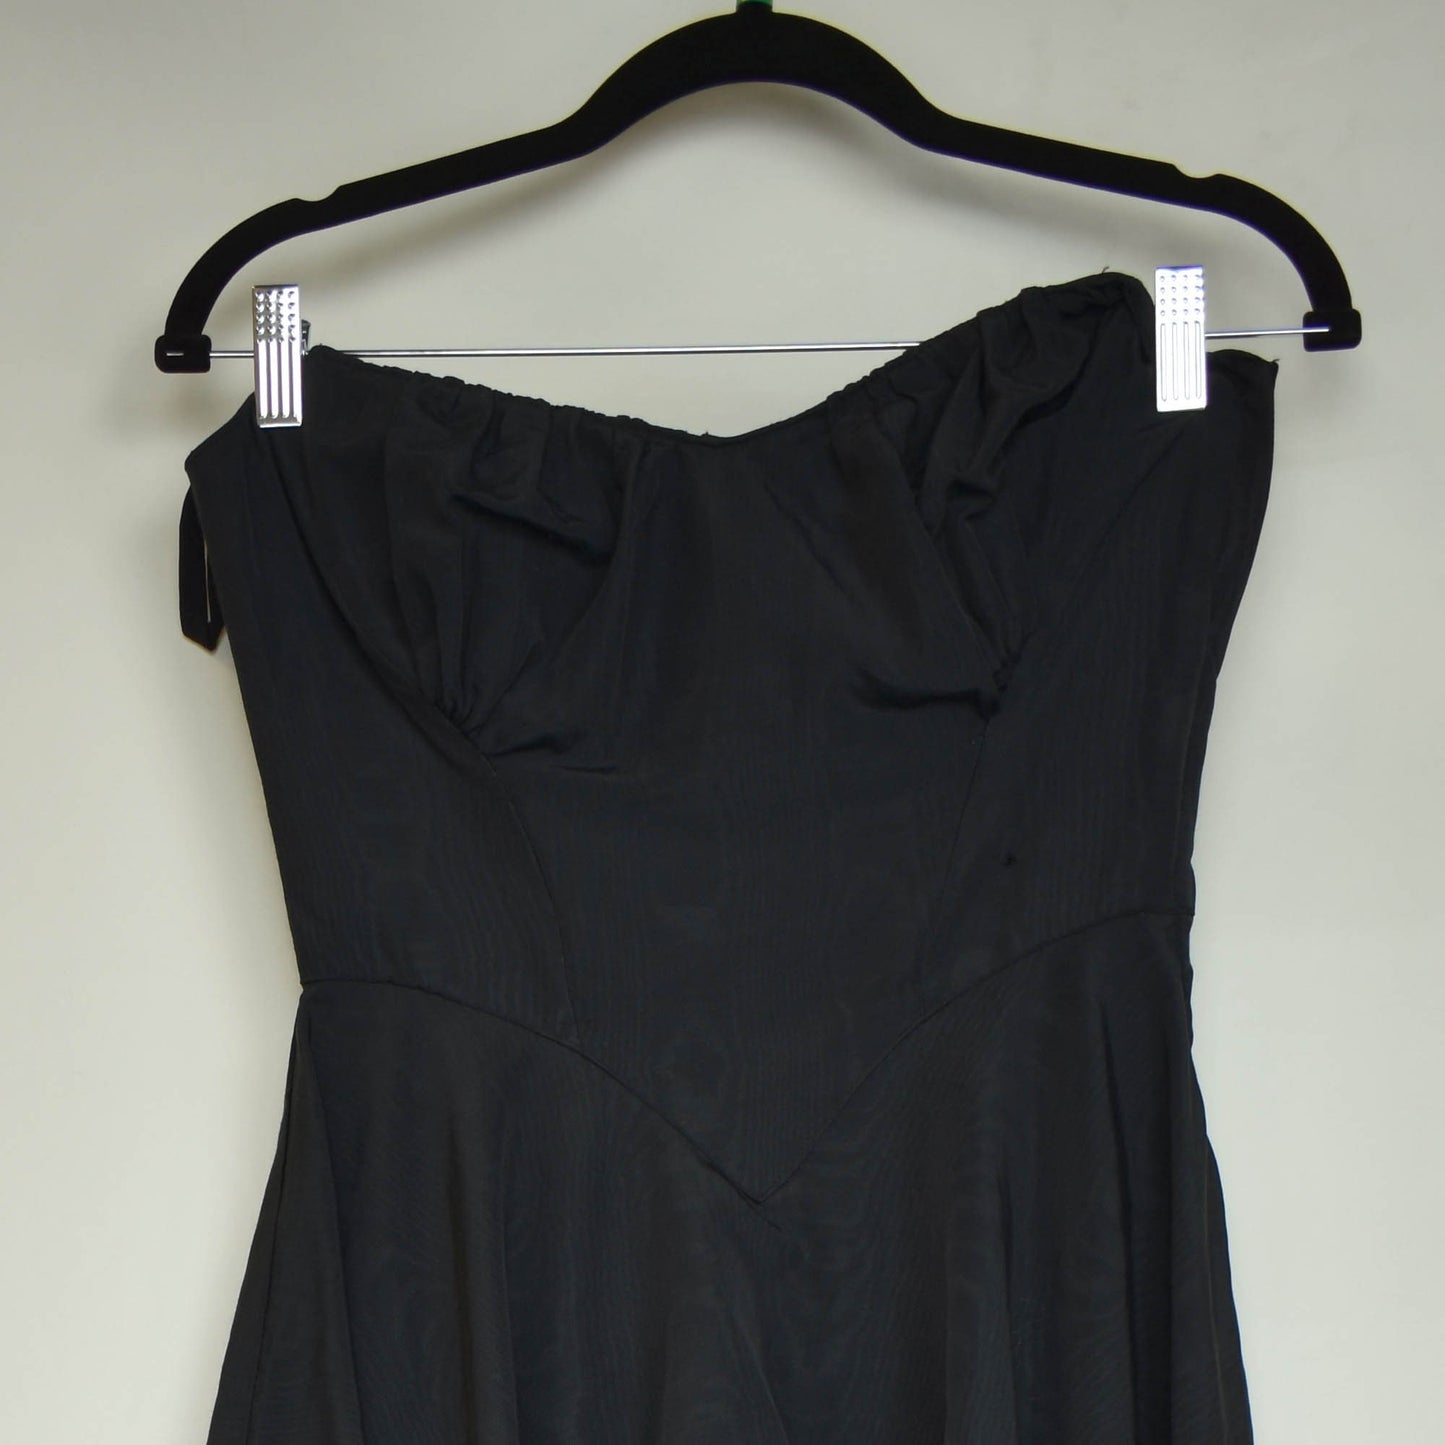 30s 40s Strapless Evening Dress - Peplum Skirt - Boning - Side Metal Zipper - Fits Like Small 25" Waist